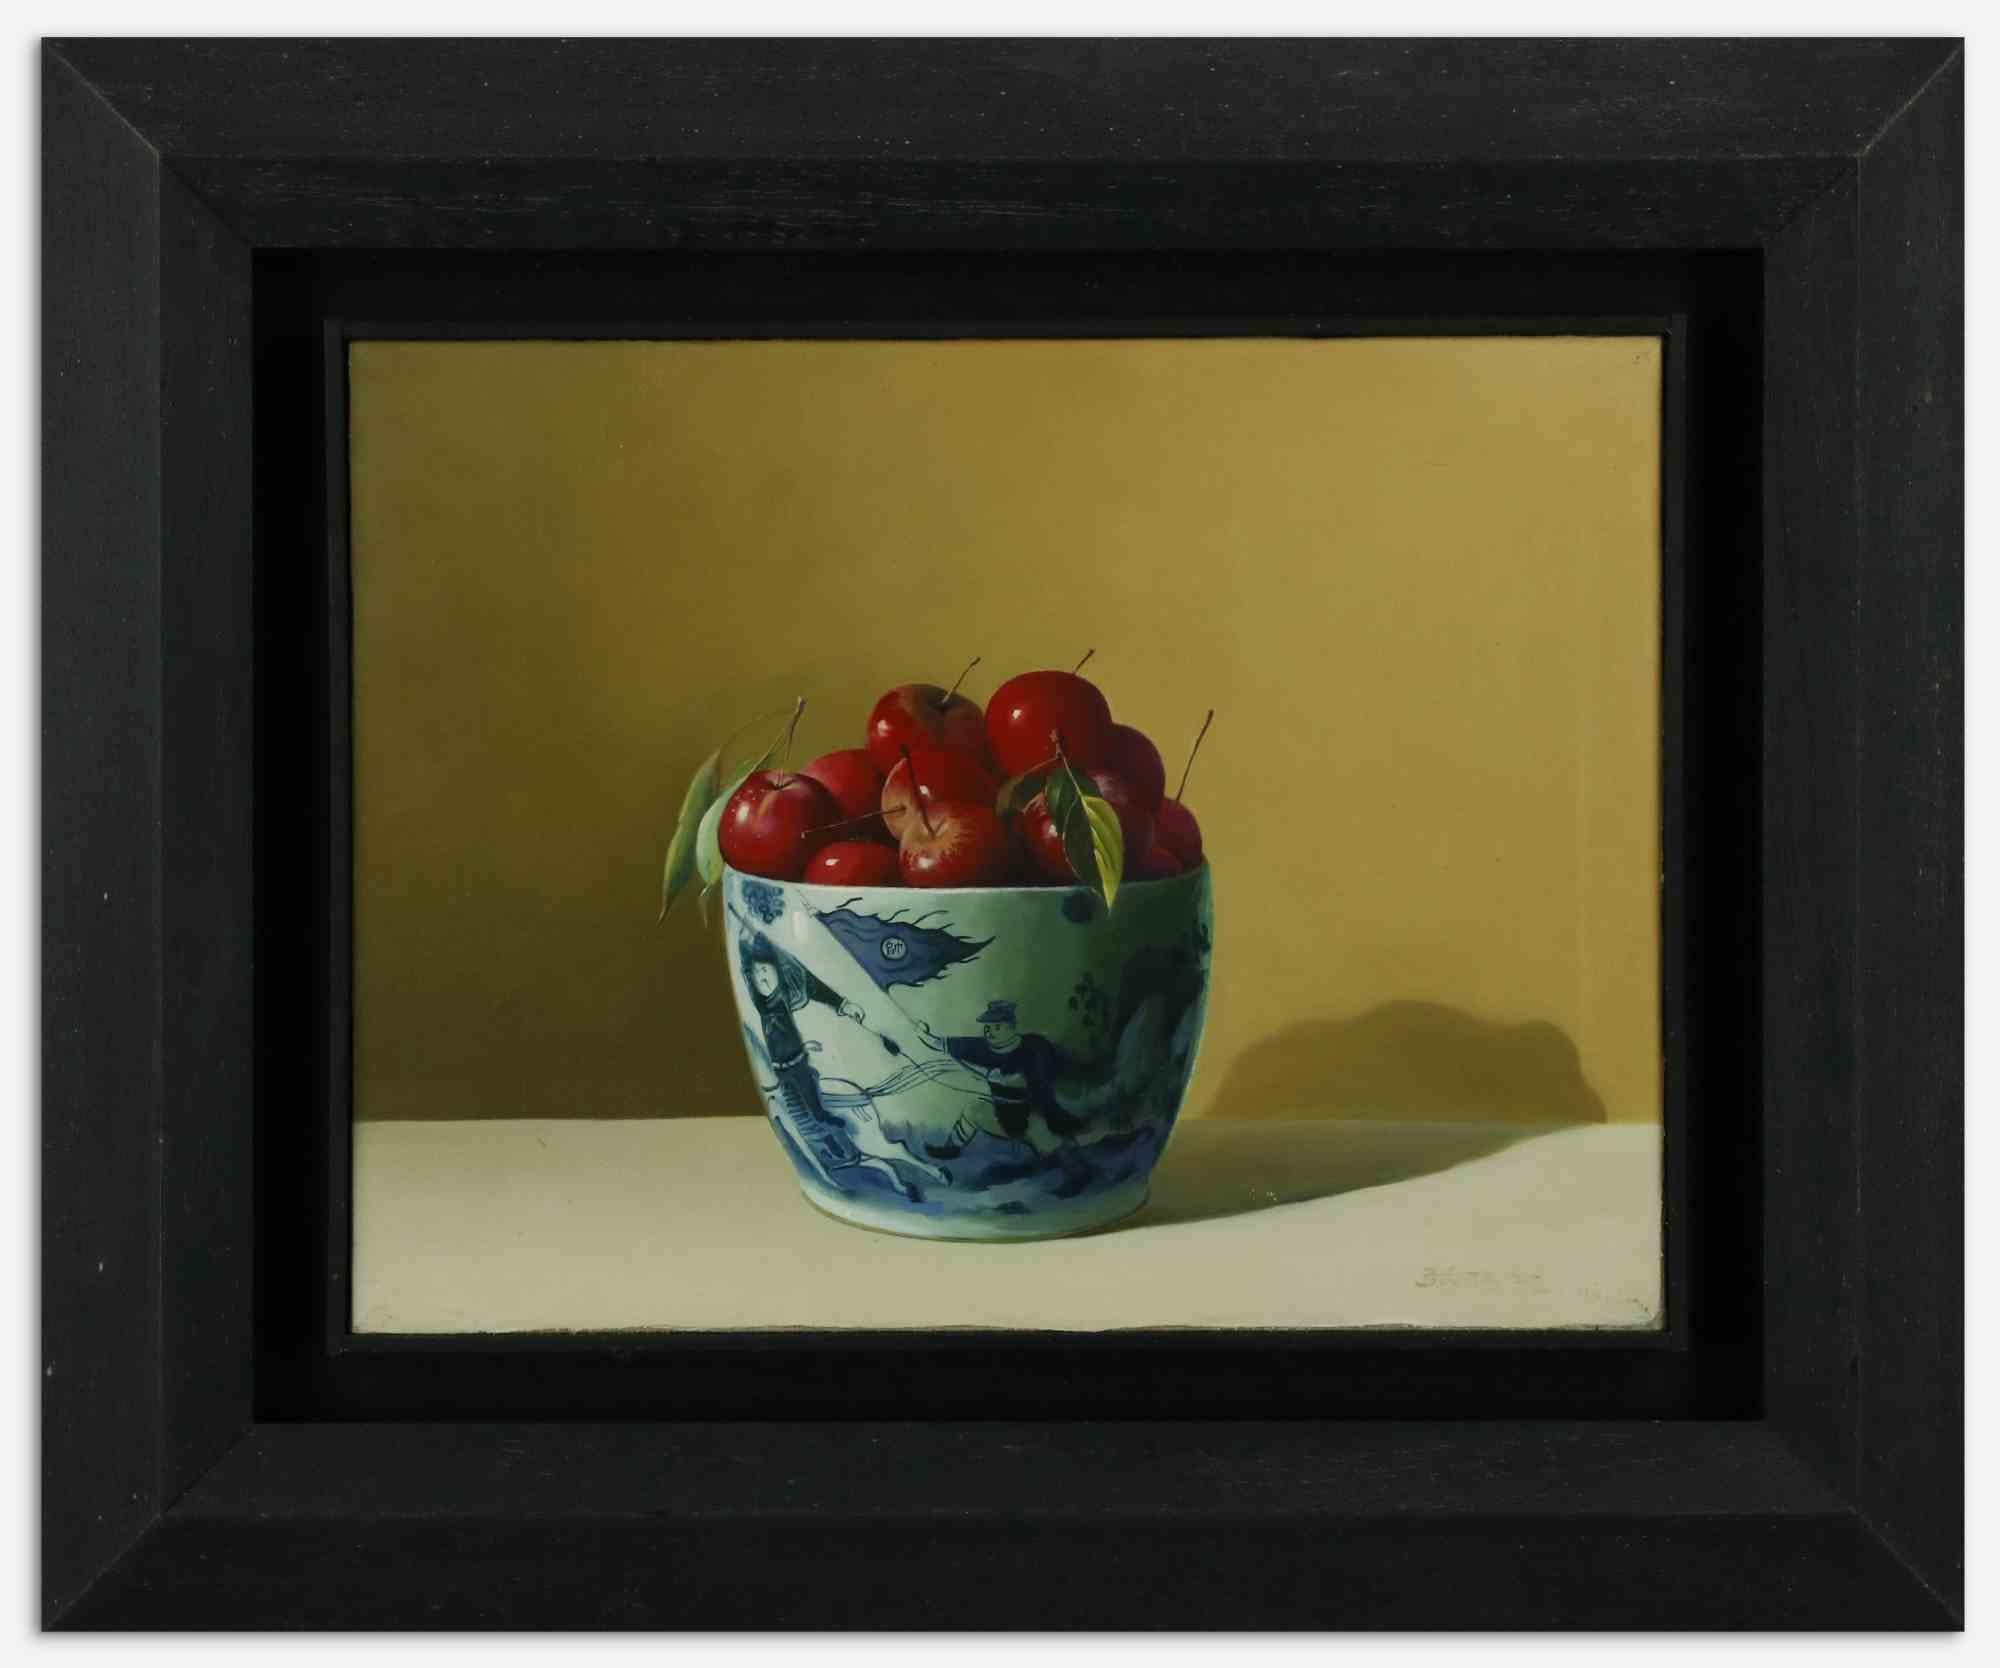 La cerise est un  peinture à l'huile réalisée en 2007 par Zhang Wei Guang (Miroir).

Belle peinture à l'huile sur toile. 

Inclut le cadre.

Signé à la main dans le coin inférieur droit.

Bonnes conditions.

Zhang Wei Guang, également appelé